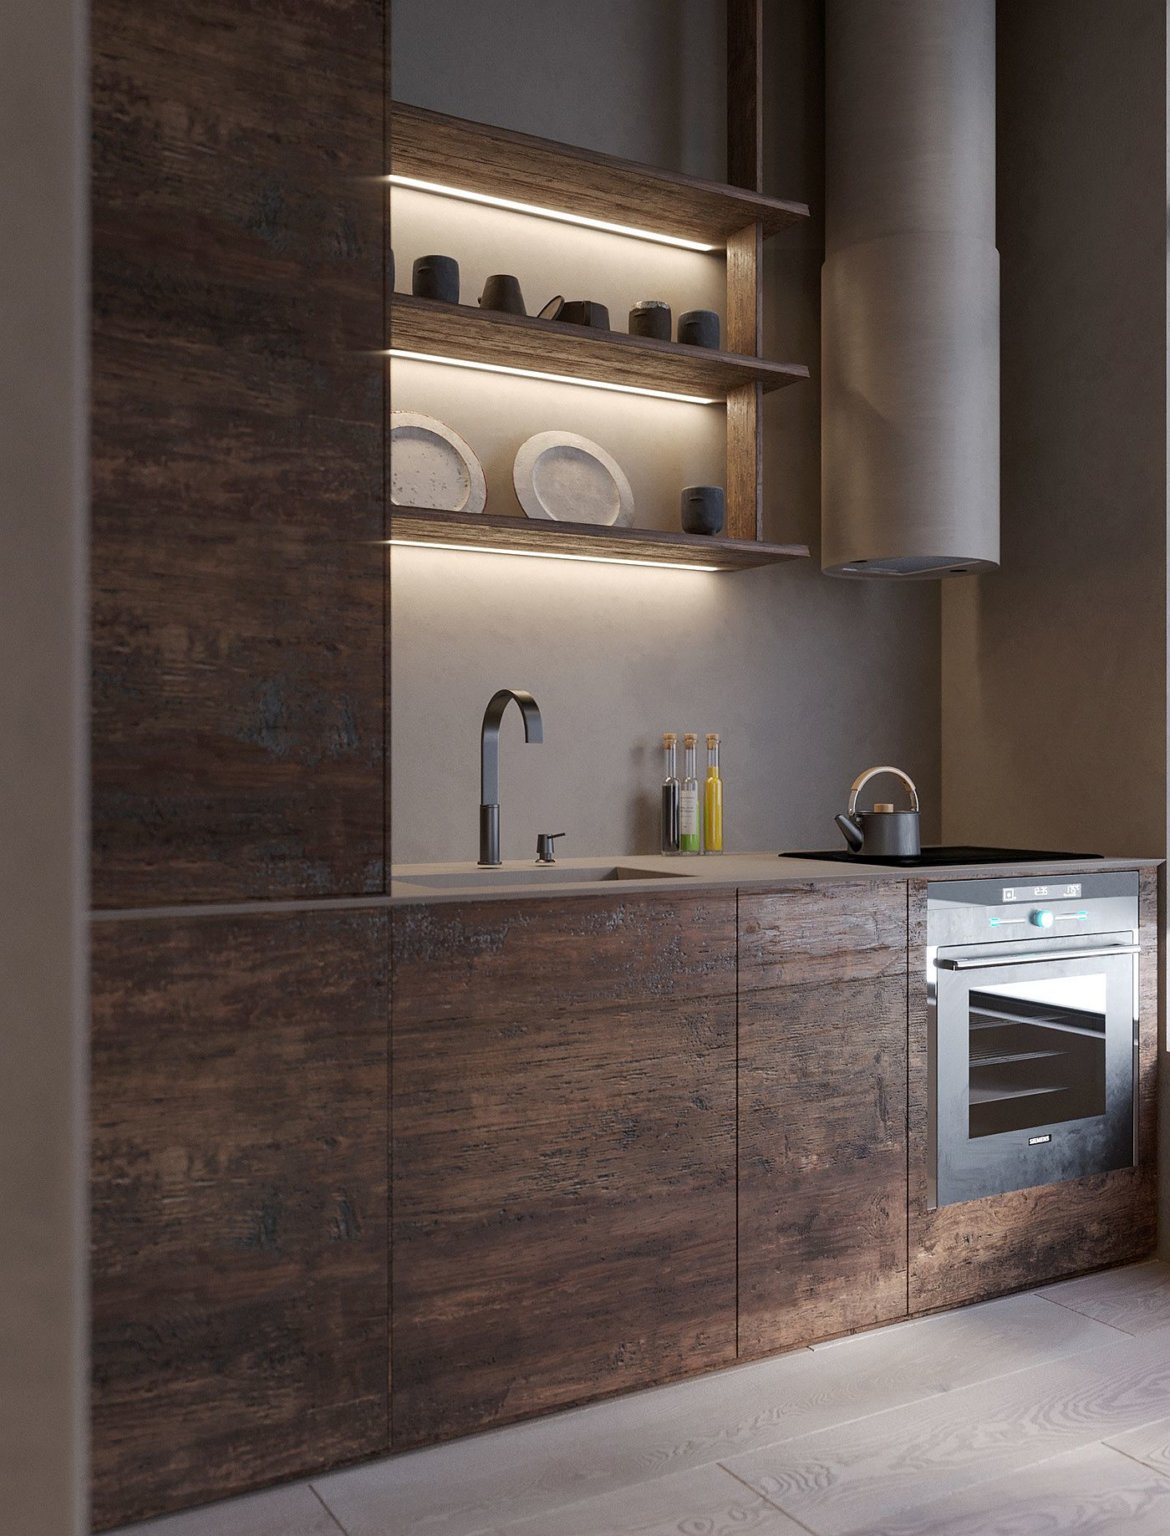 hình ảnh cận cảnh tủ bếp bằng gỗ sẫm màu, kệ mở gắn đèn LED đẹp mắt